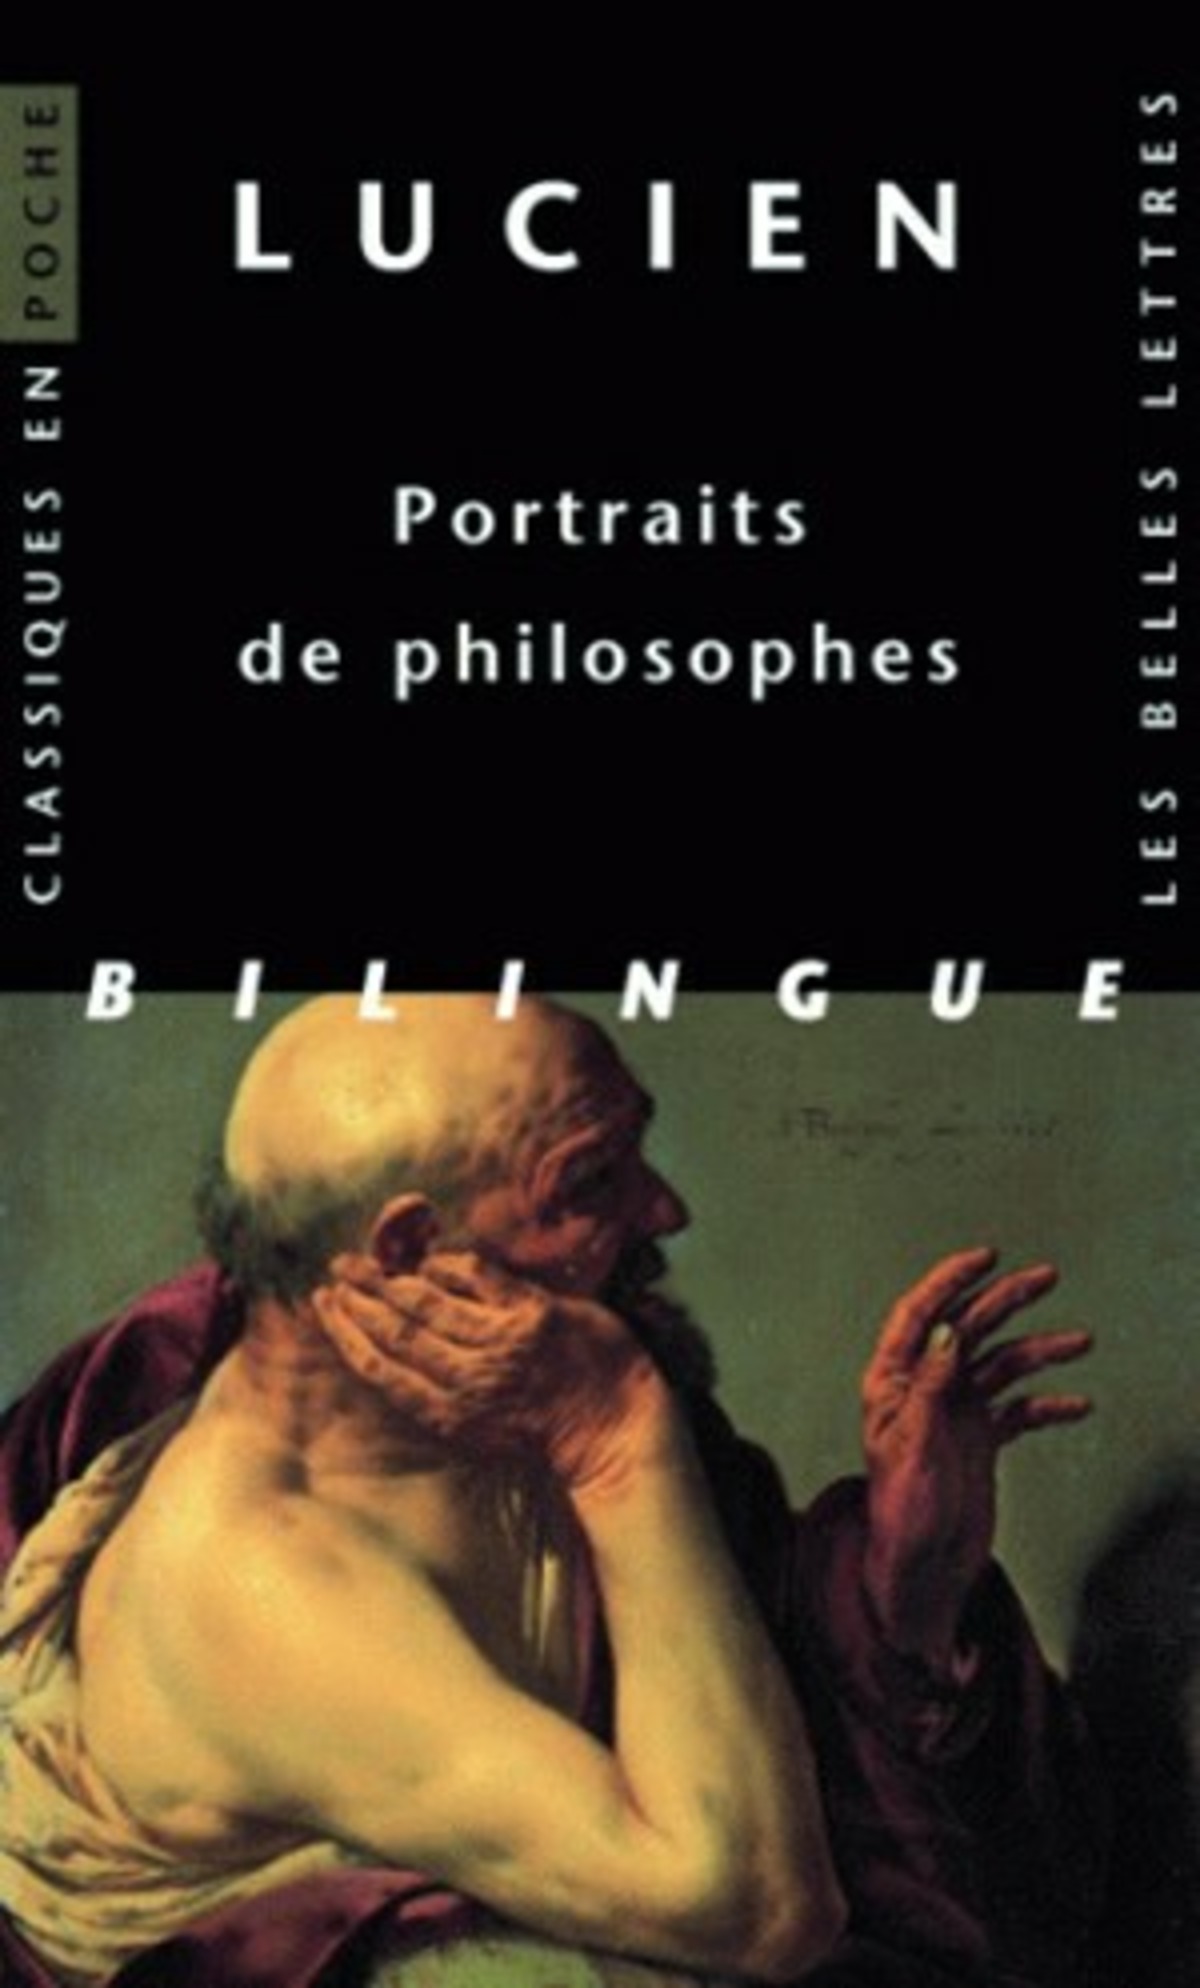 Portraits de philosophes